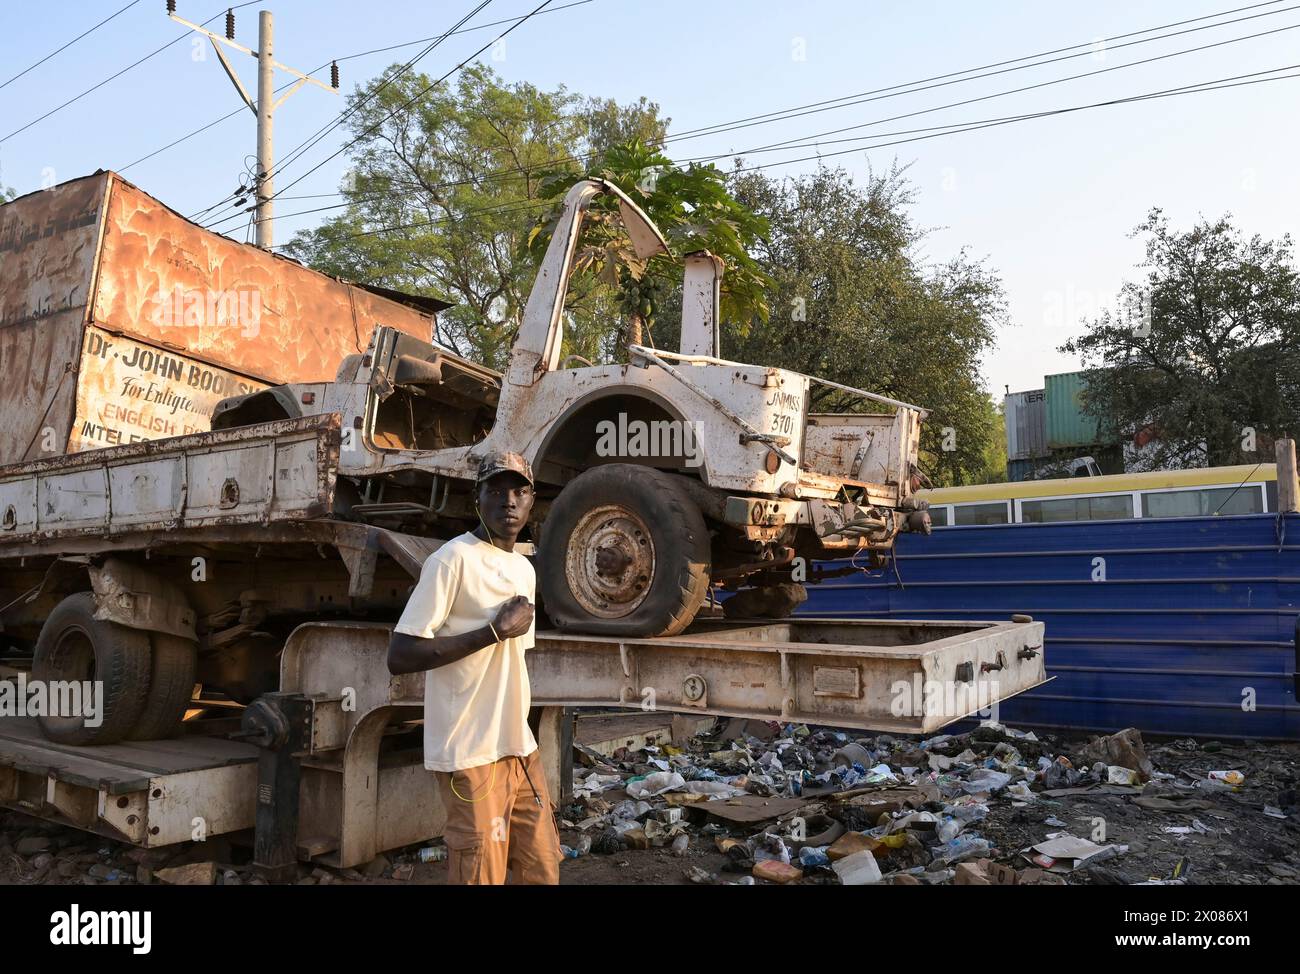 SUDAN DEL SUD, capitale Juba, rottami e spazzatura su strada, jeep dell'organizzazione ONU UNMISS / SÜDSUDAN, Hauptstadt Juba, Straßenszene, Schrotthandel Foto Stock